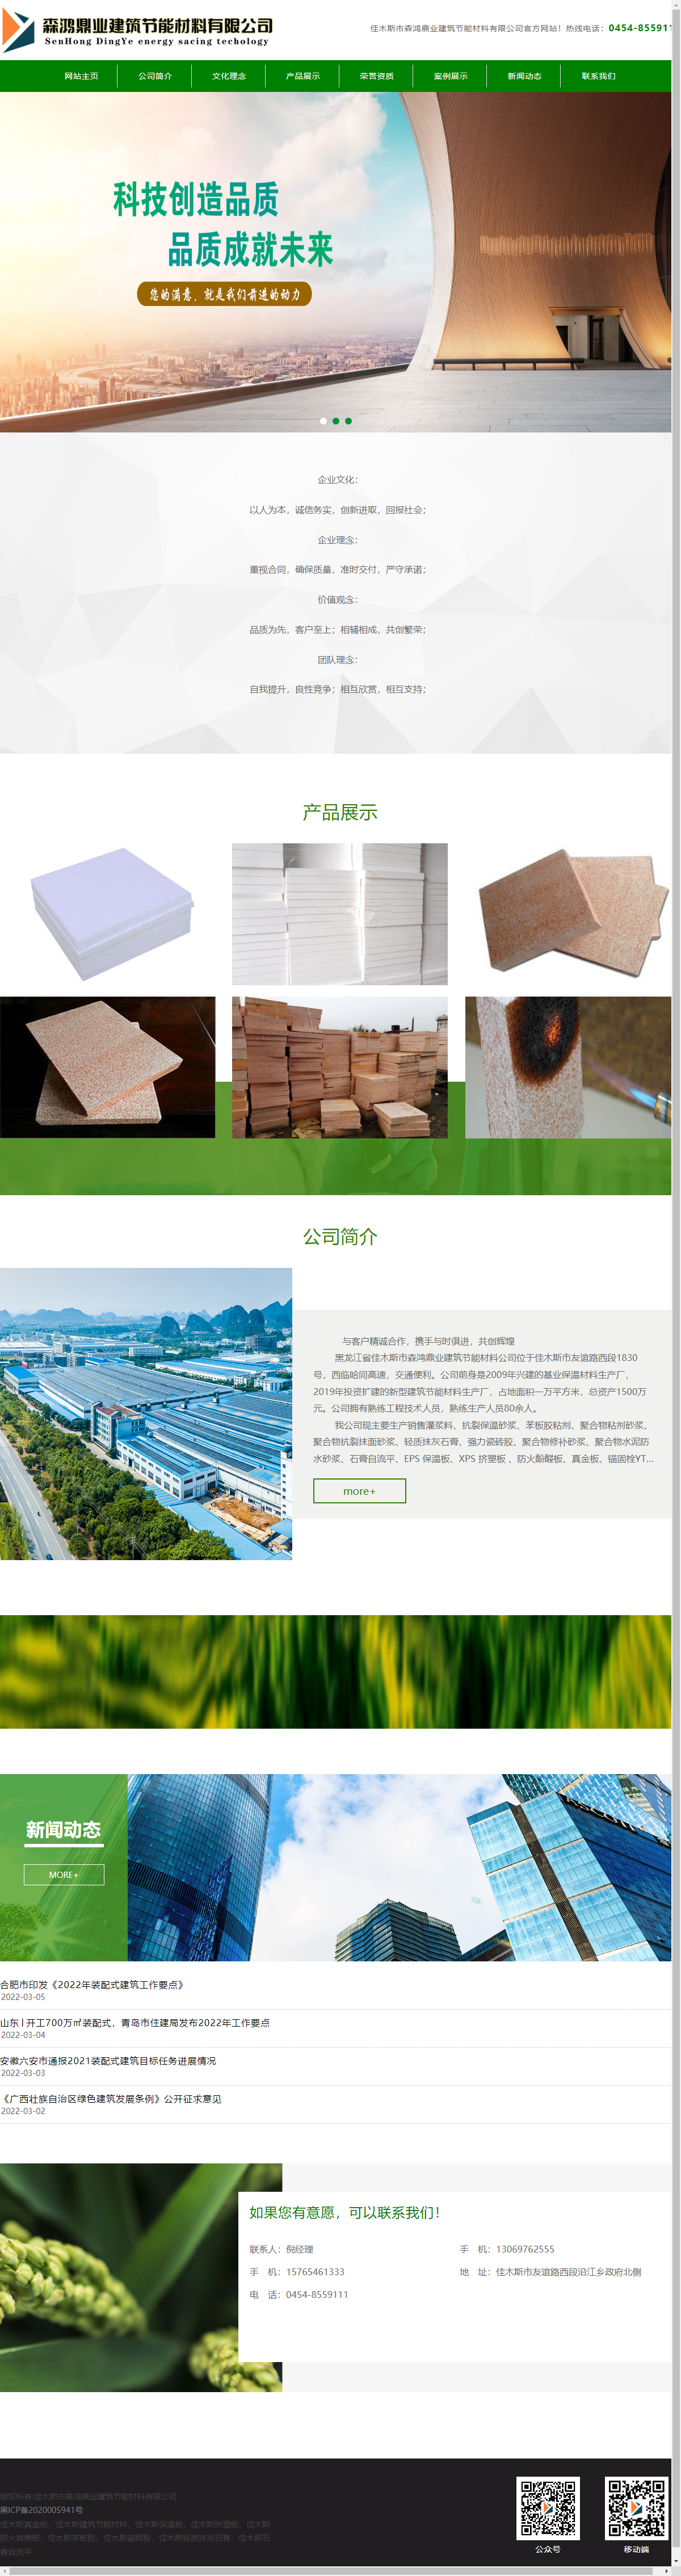 佳木斯市森鸿鼎业建筑节能材料有限公司网站案例